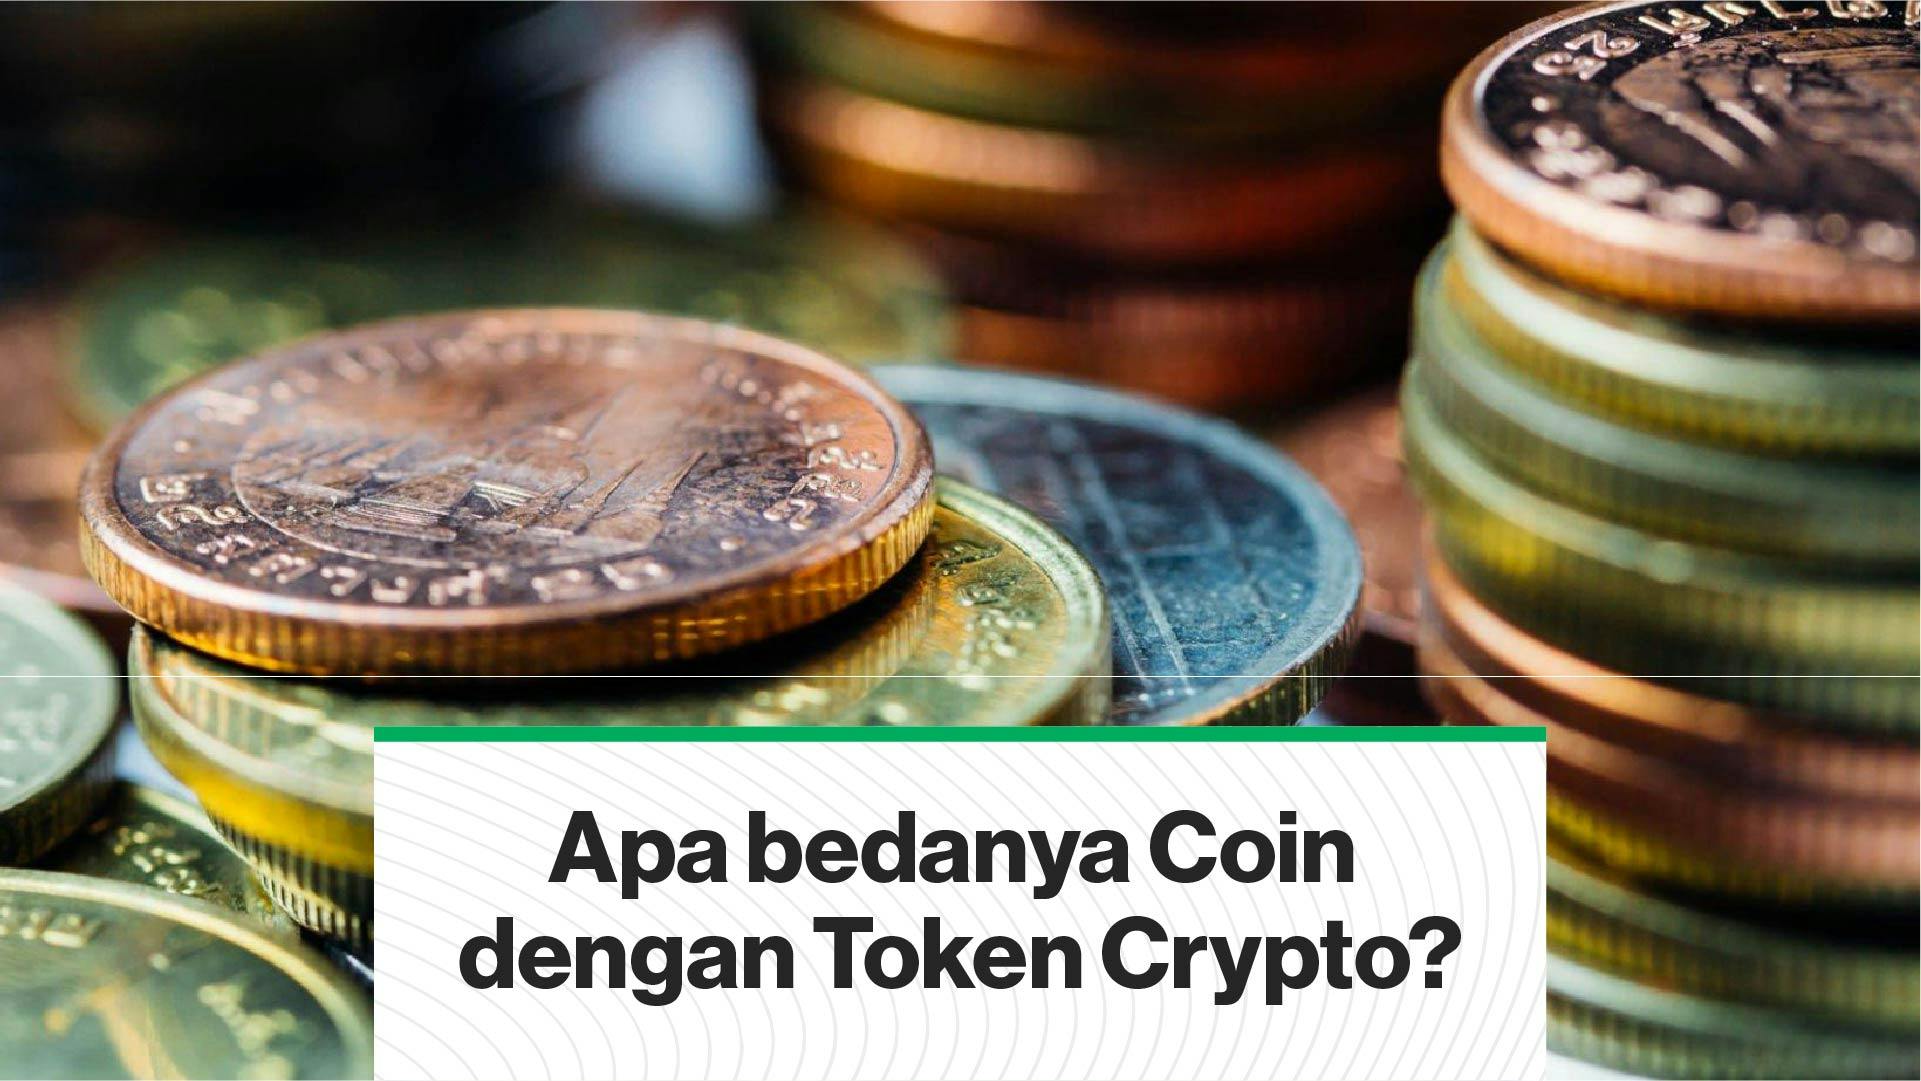 Apa bedanya Coin dengan Token Crypto? (Coindesk Indonesia)